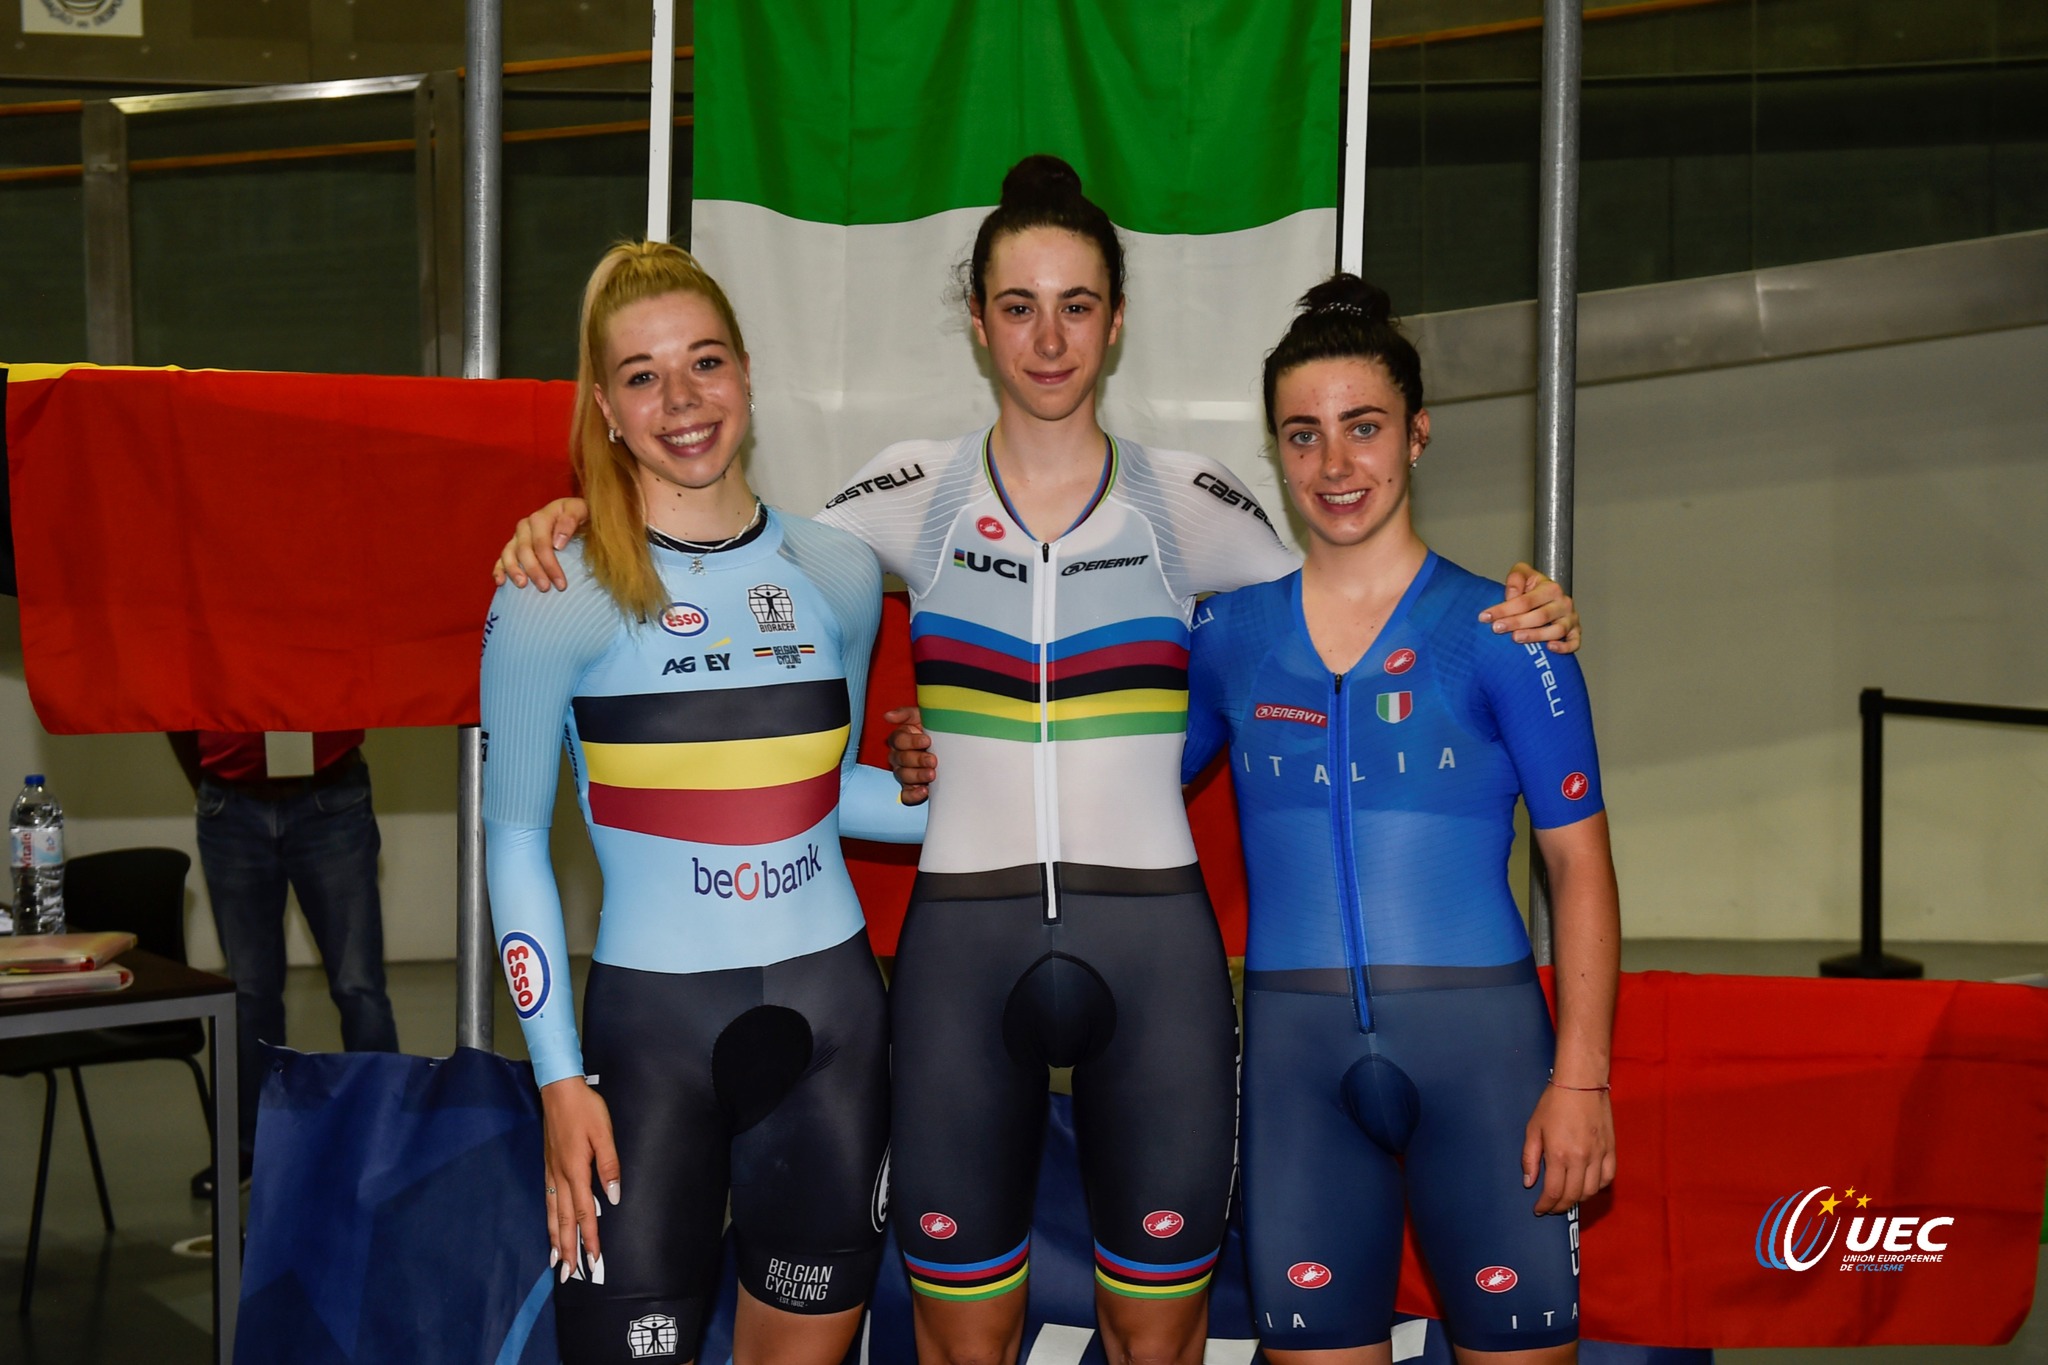 Итальянка легко выиграла индивидуальную гонку преследования на чемпионате Европы среди юниорок